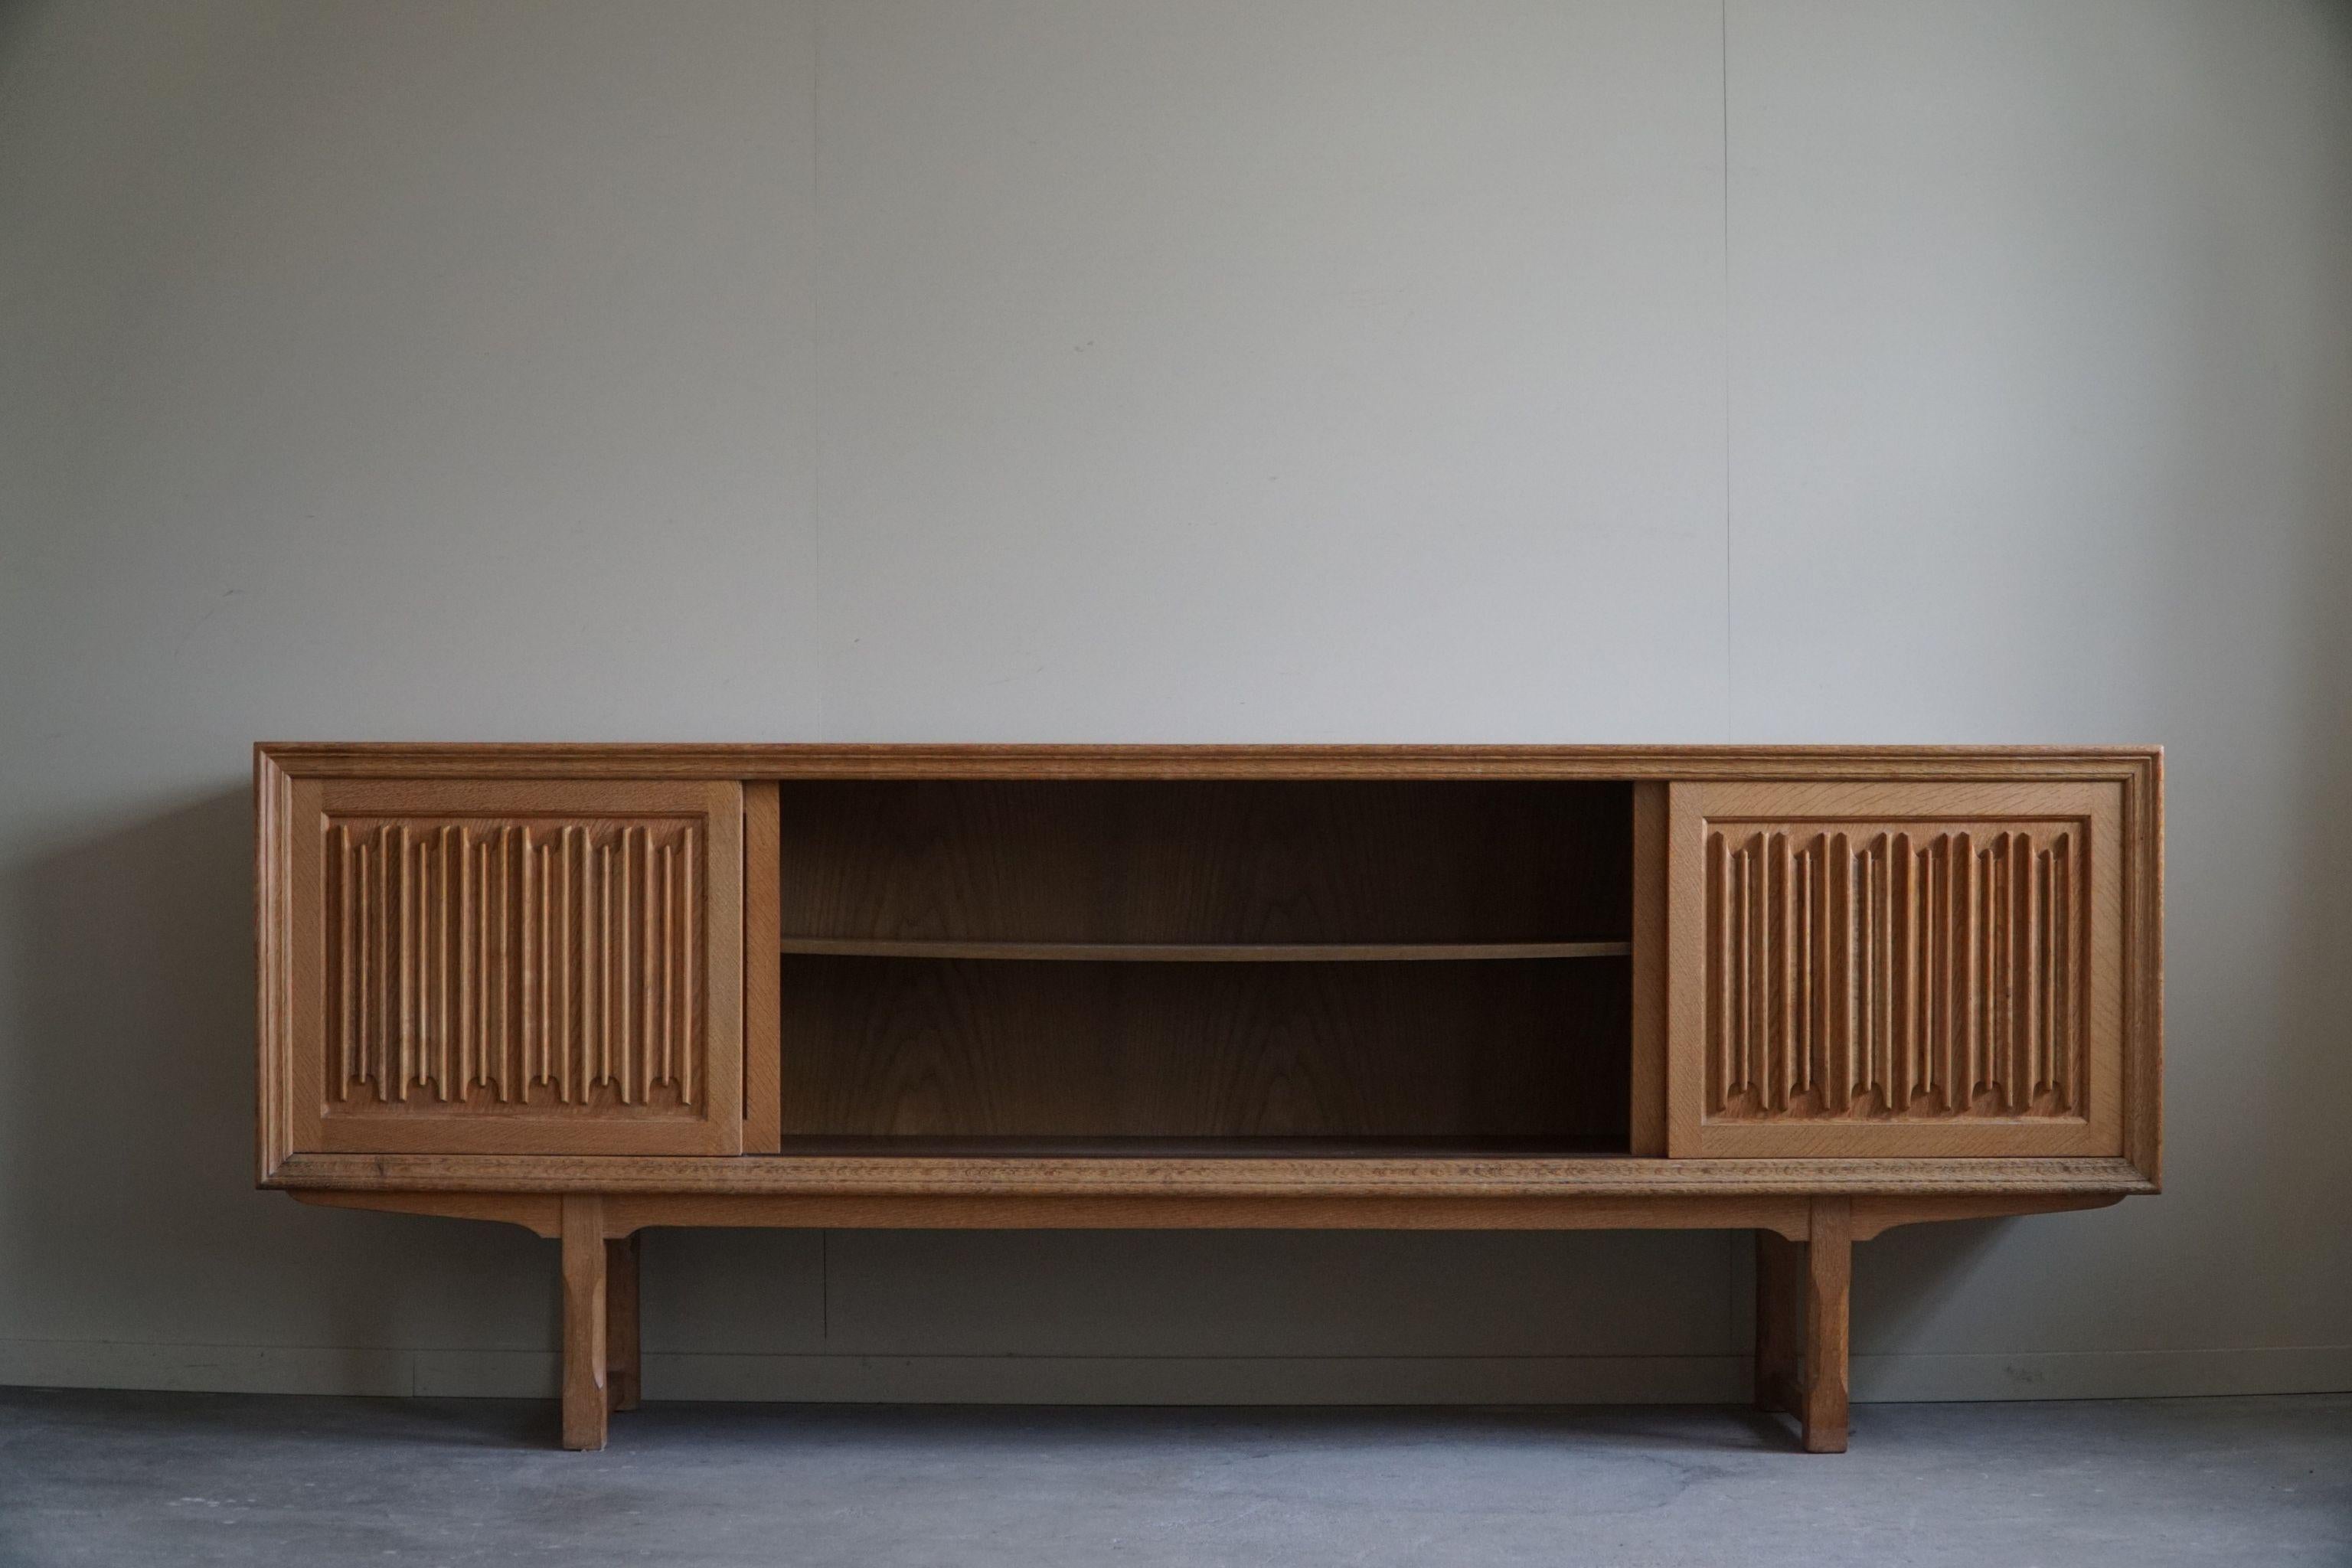 Sculptural Low Sideboard in Oak, Mid Century Modern, Danish Cabinetmaker, 1960s For Sale 3